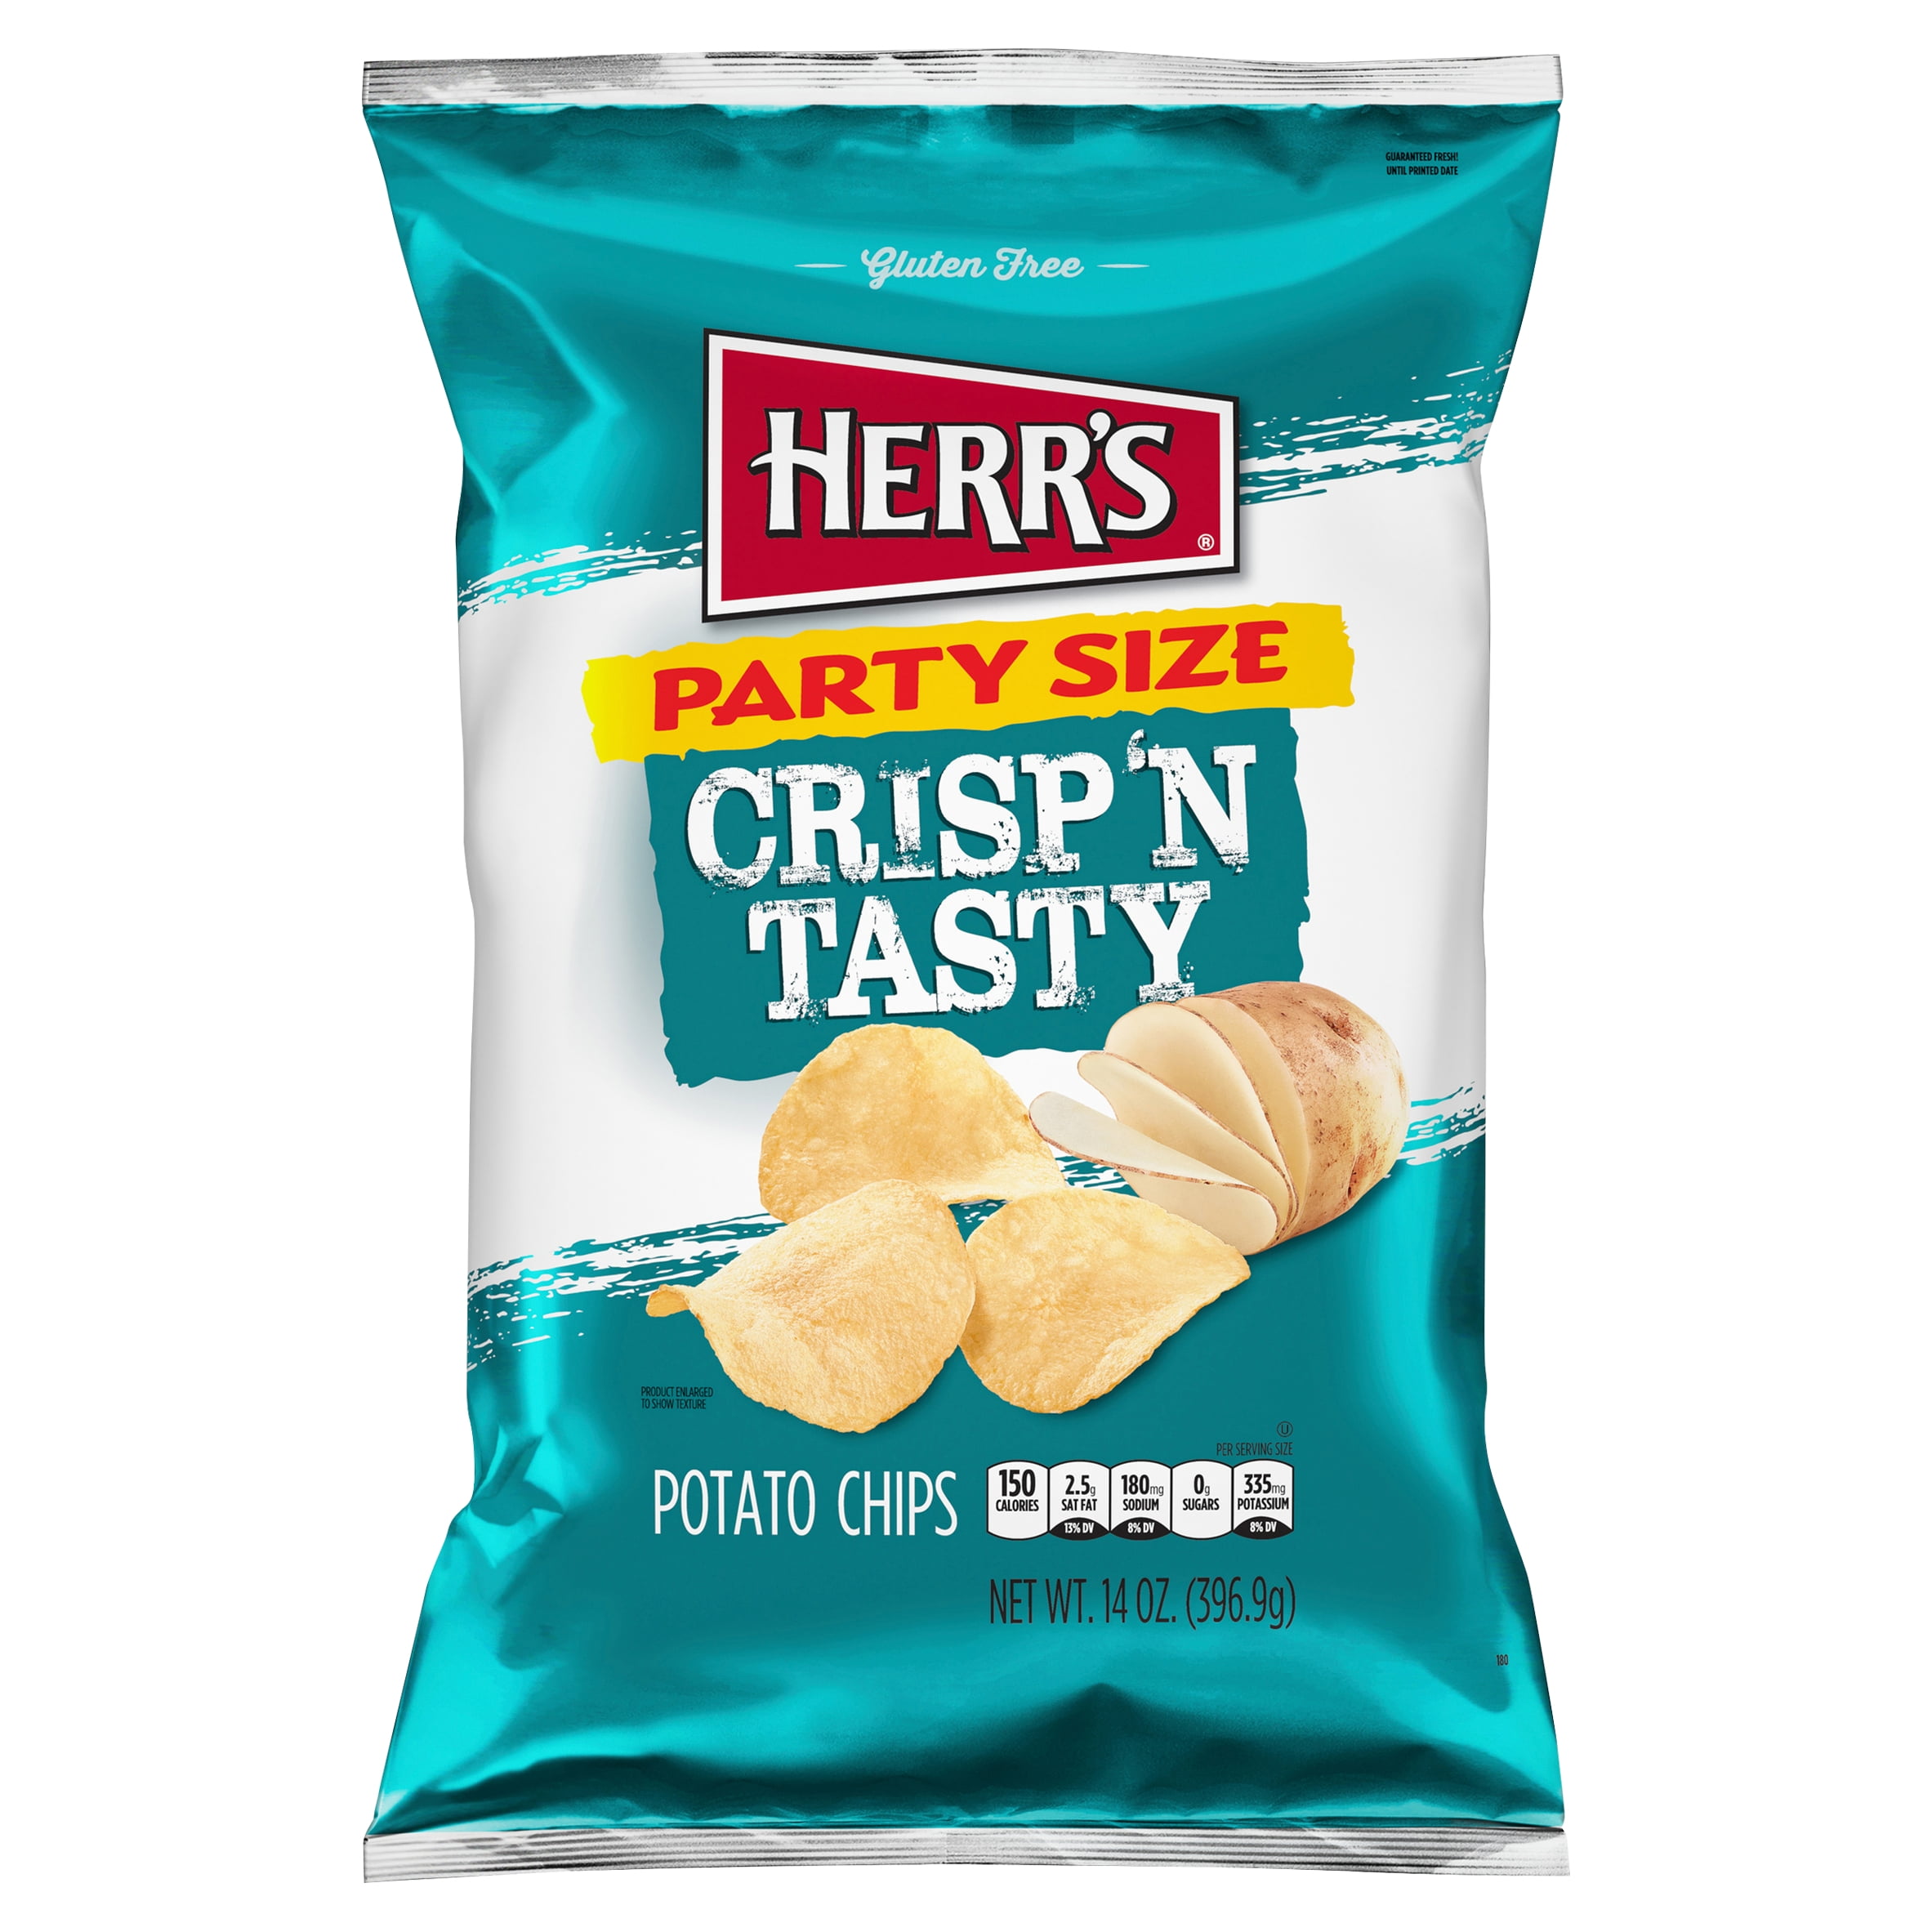 Herr's Crisp 'n Tasty Potato Chips Family Size, 14 Oz.